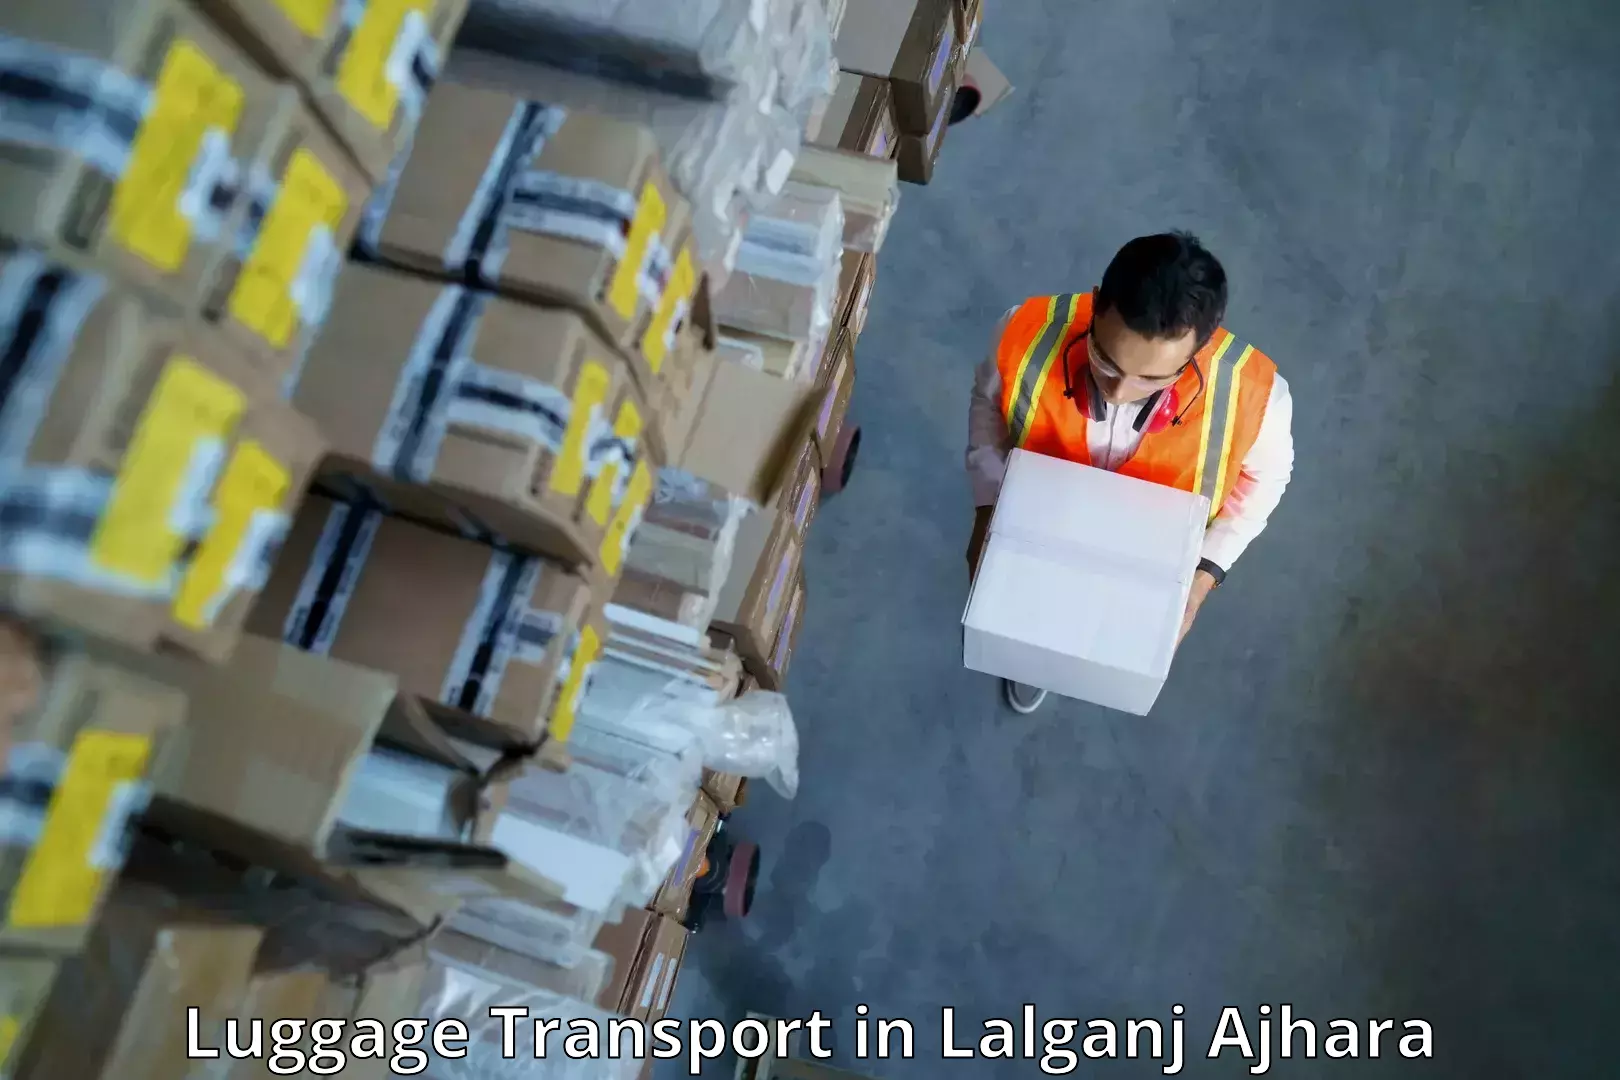 Efficient baggage transport in Lalganj Ajhara